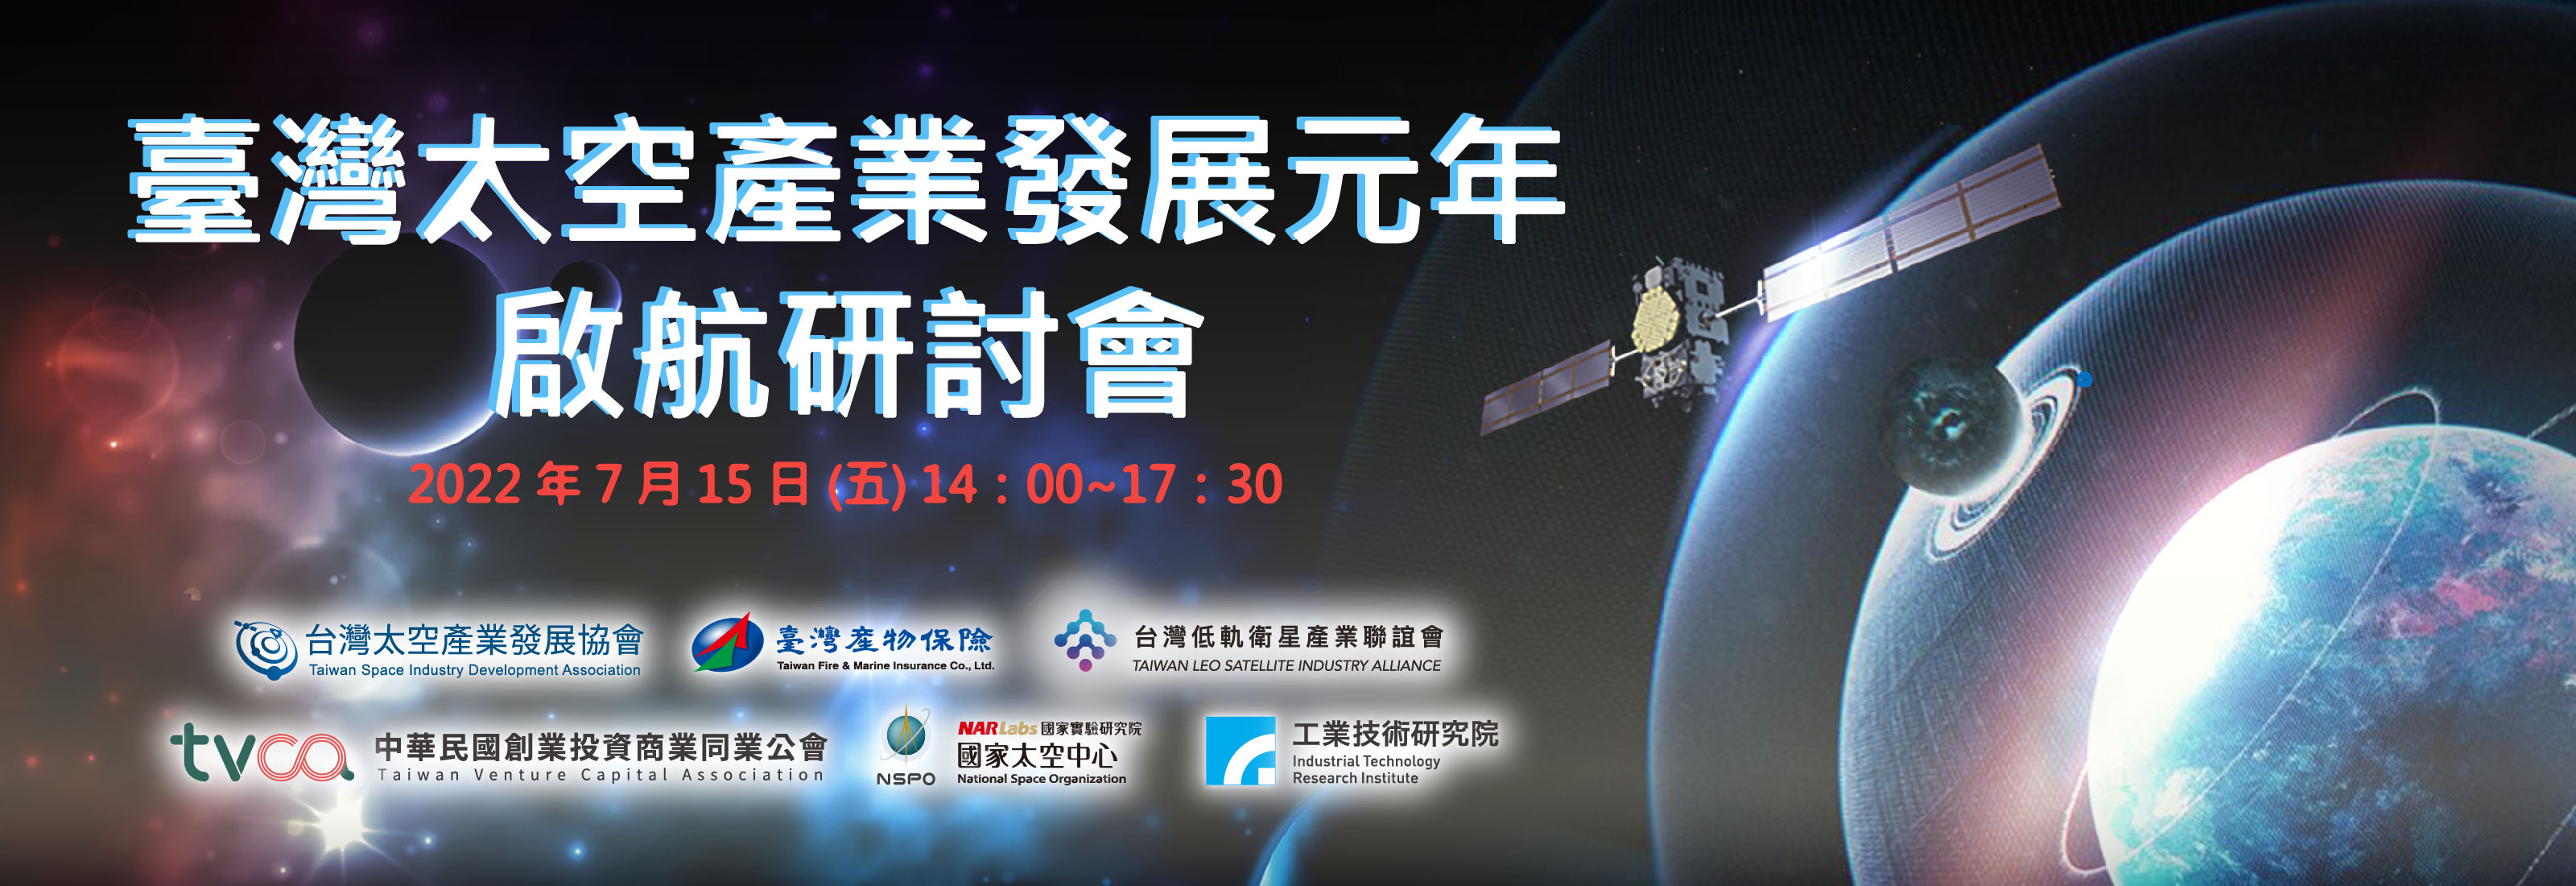 臺灣太空產業發展元年啟航研討會